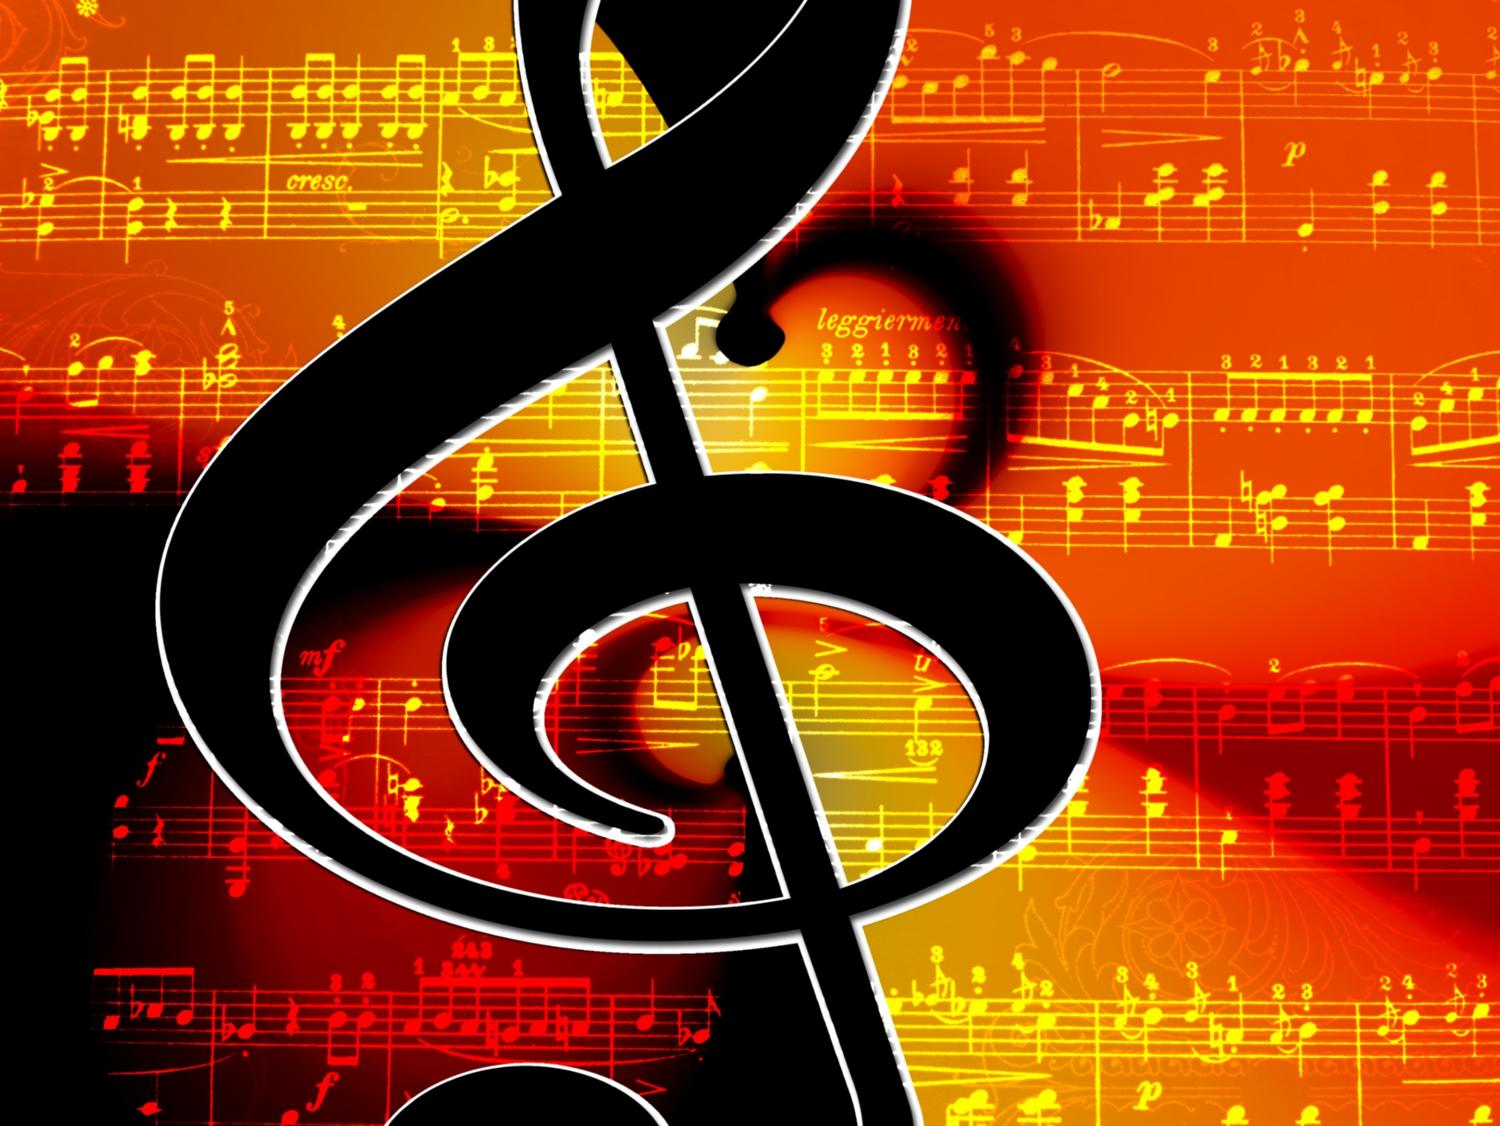 Konzert (c) www.pixabay.com